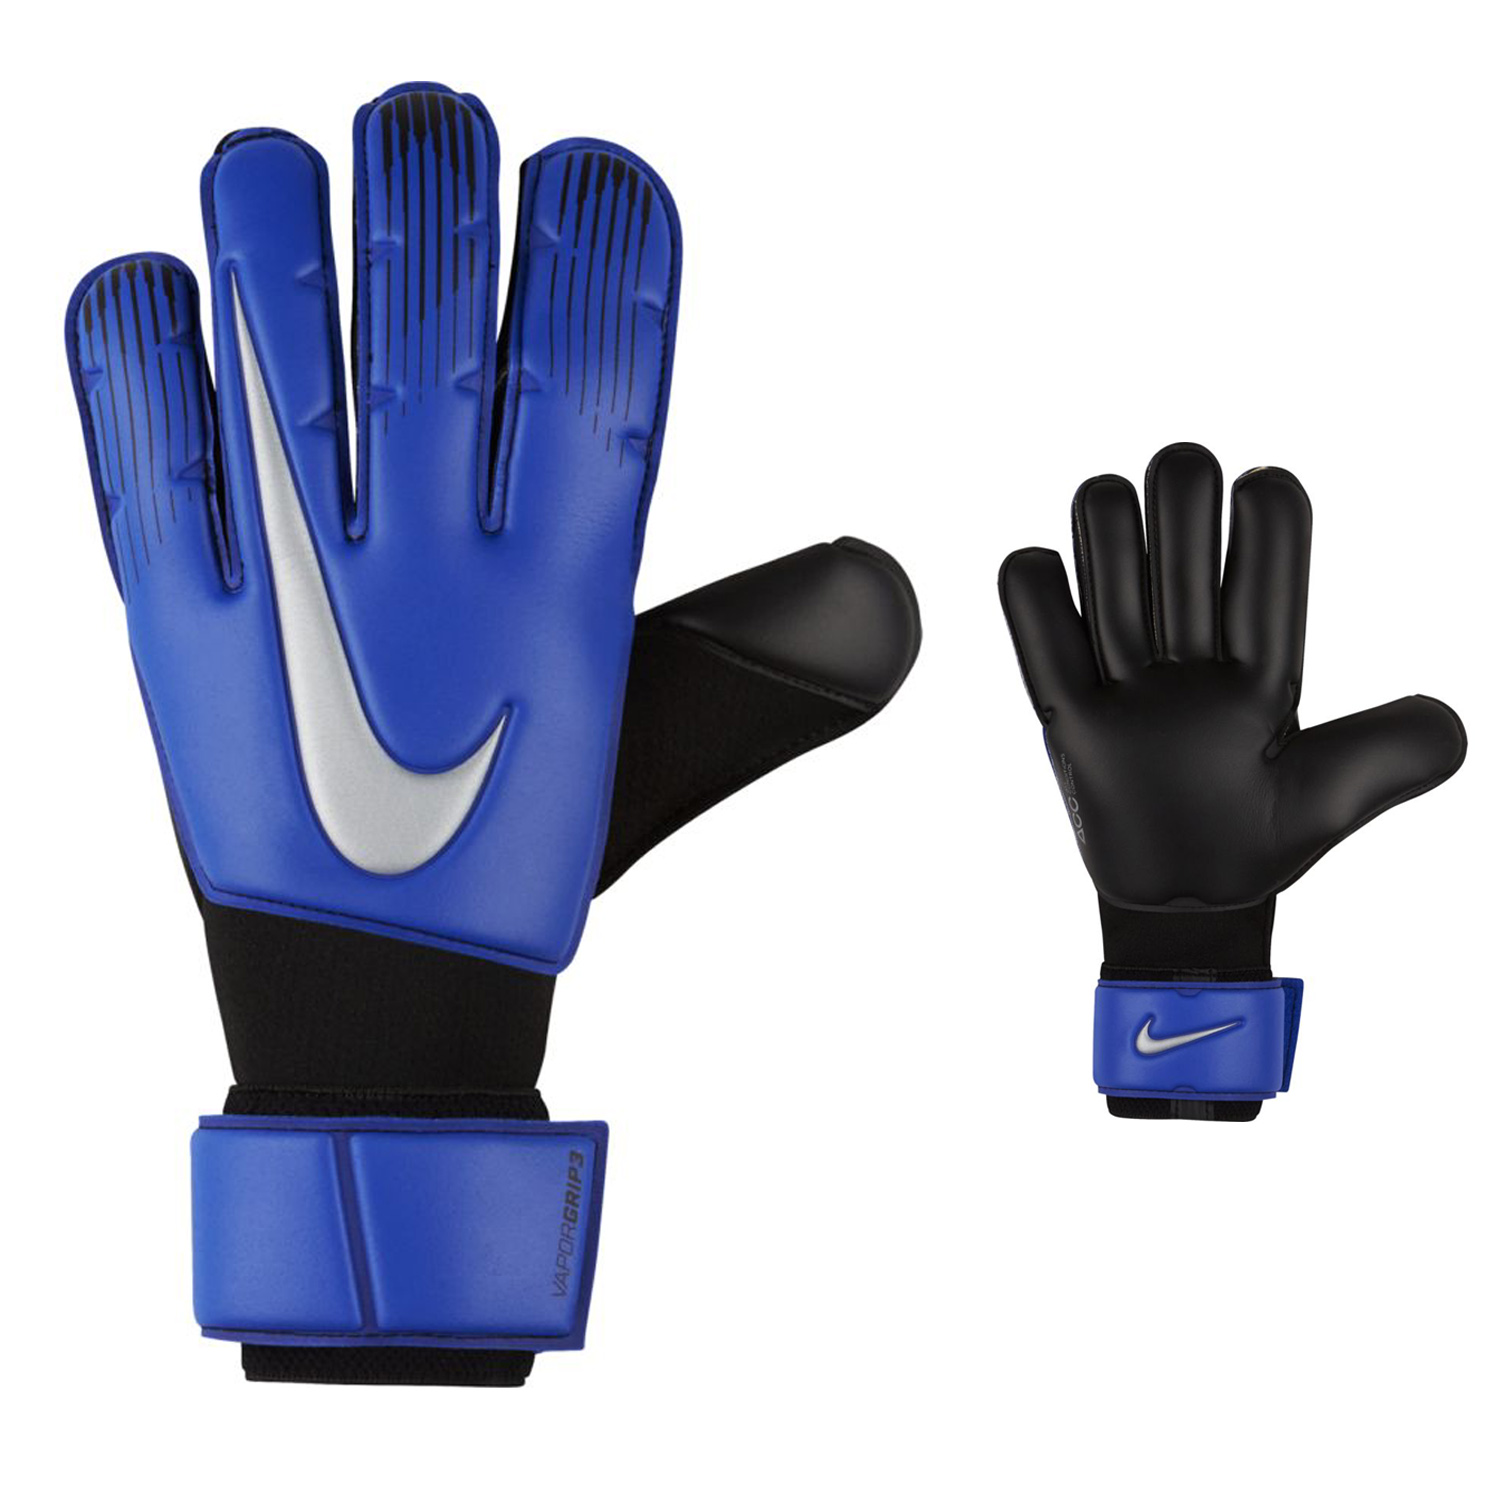 Nike Soccer Glove Size Chart